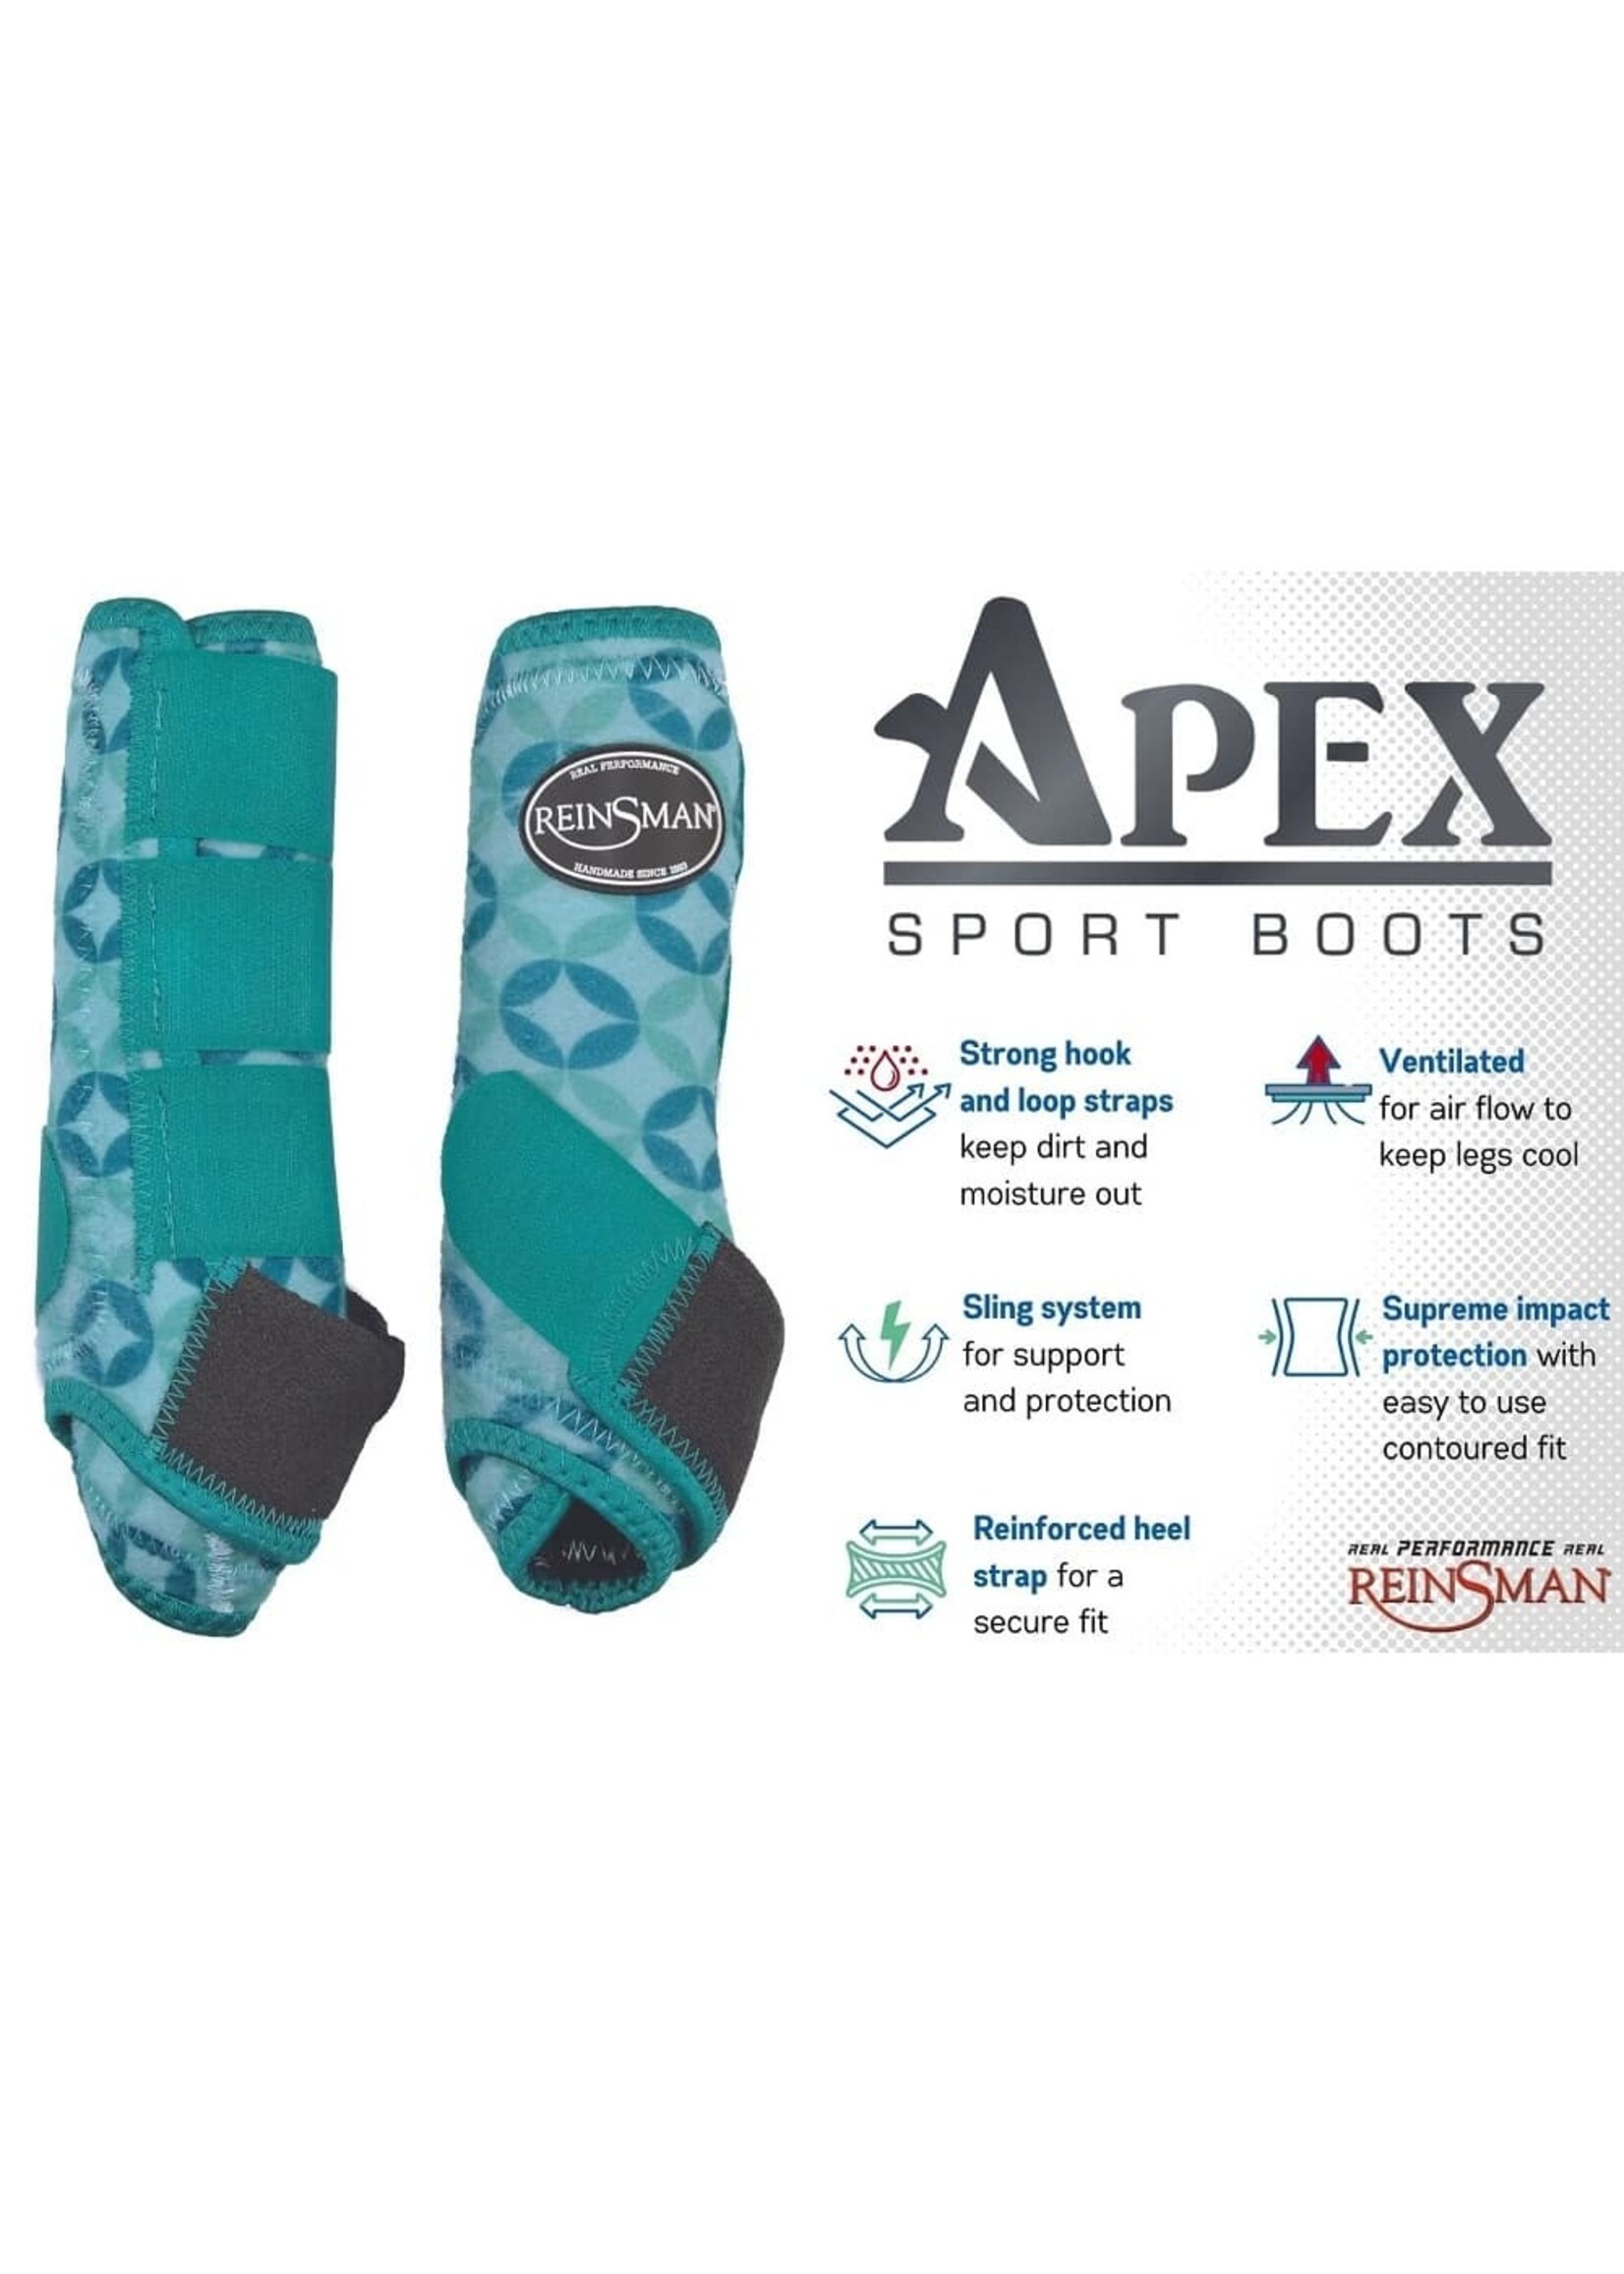 Reinsman RE- 2pk Apex Sport Boots